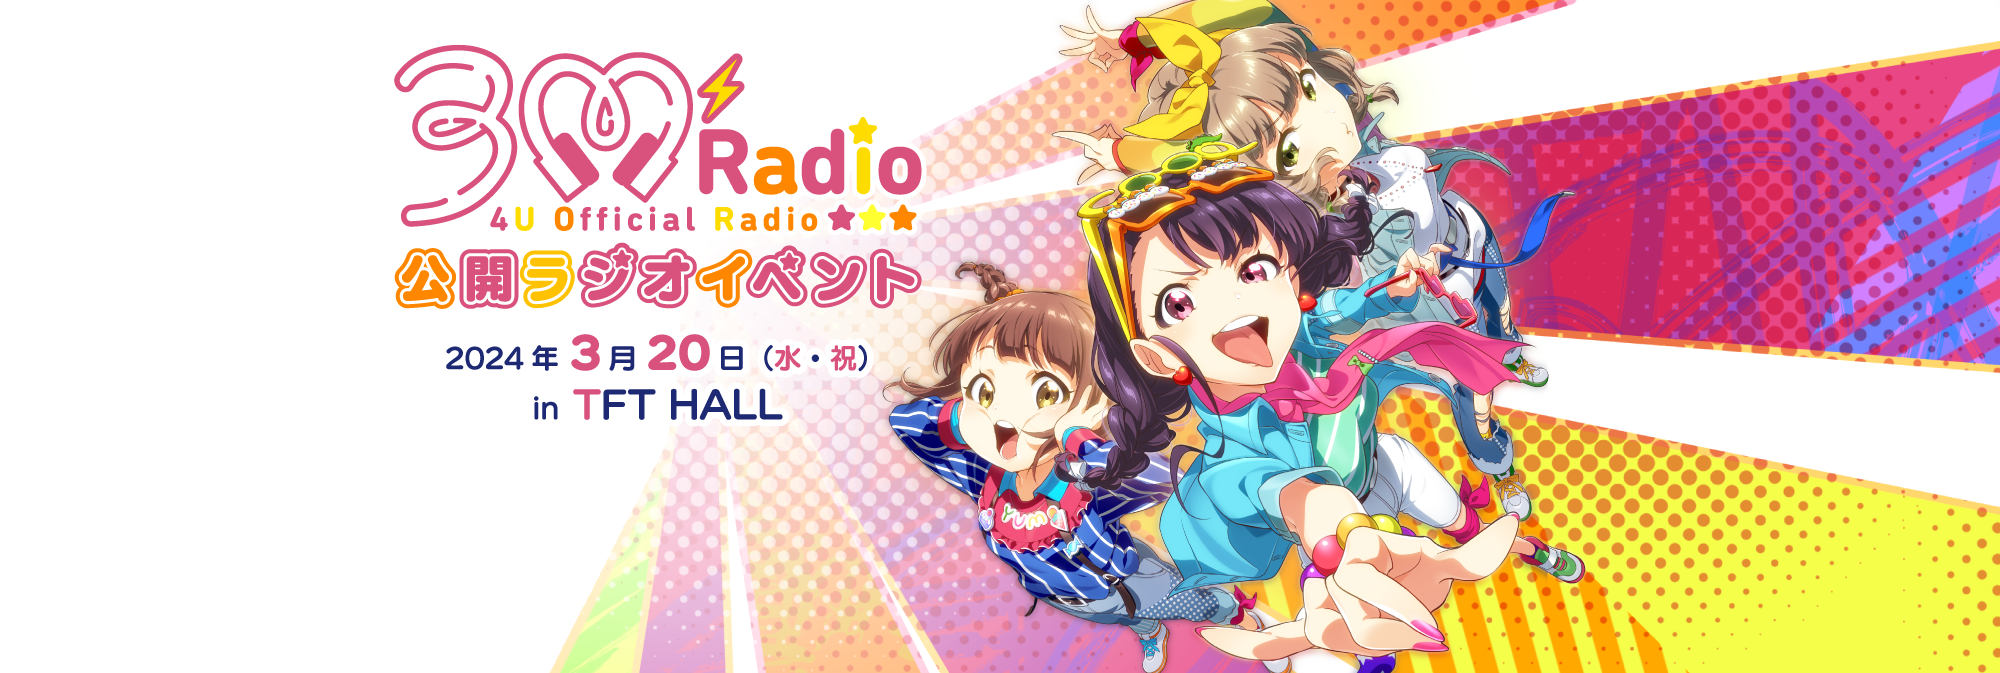 3MRadio 公開ラジオイベント